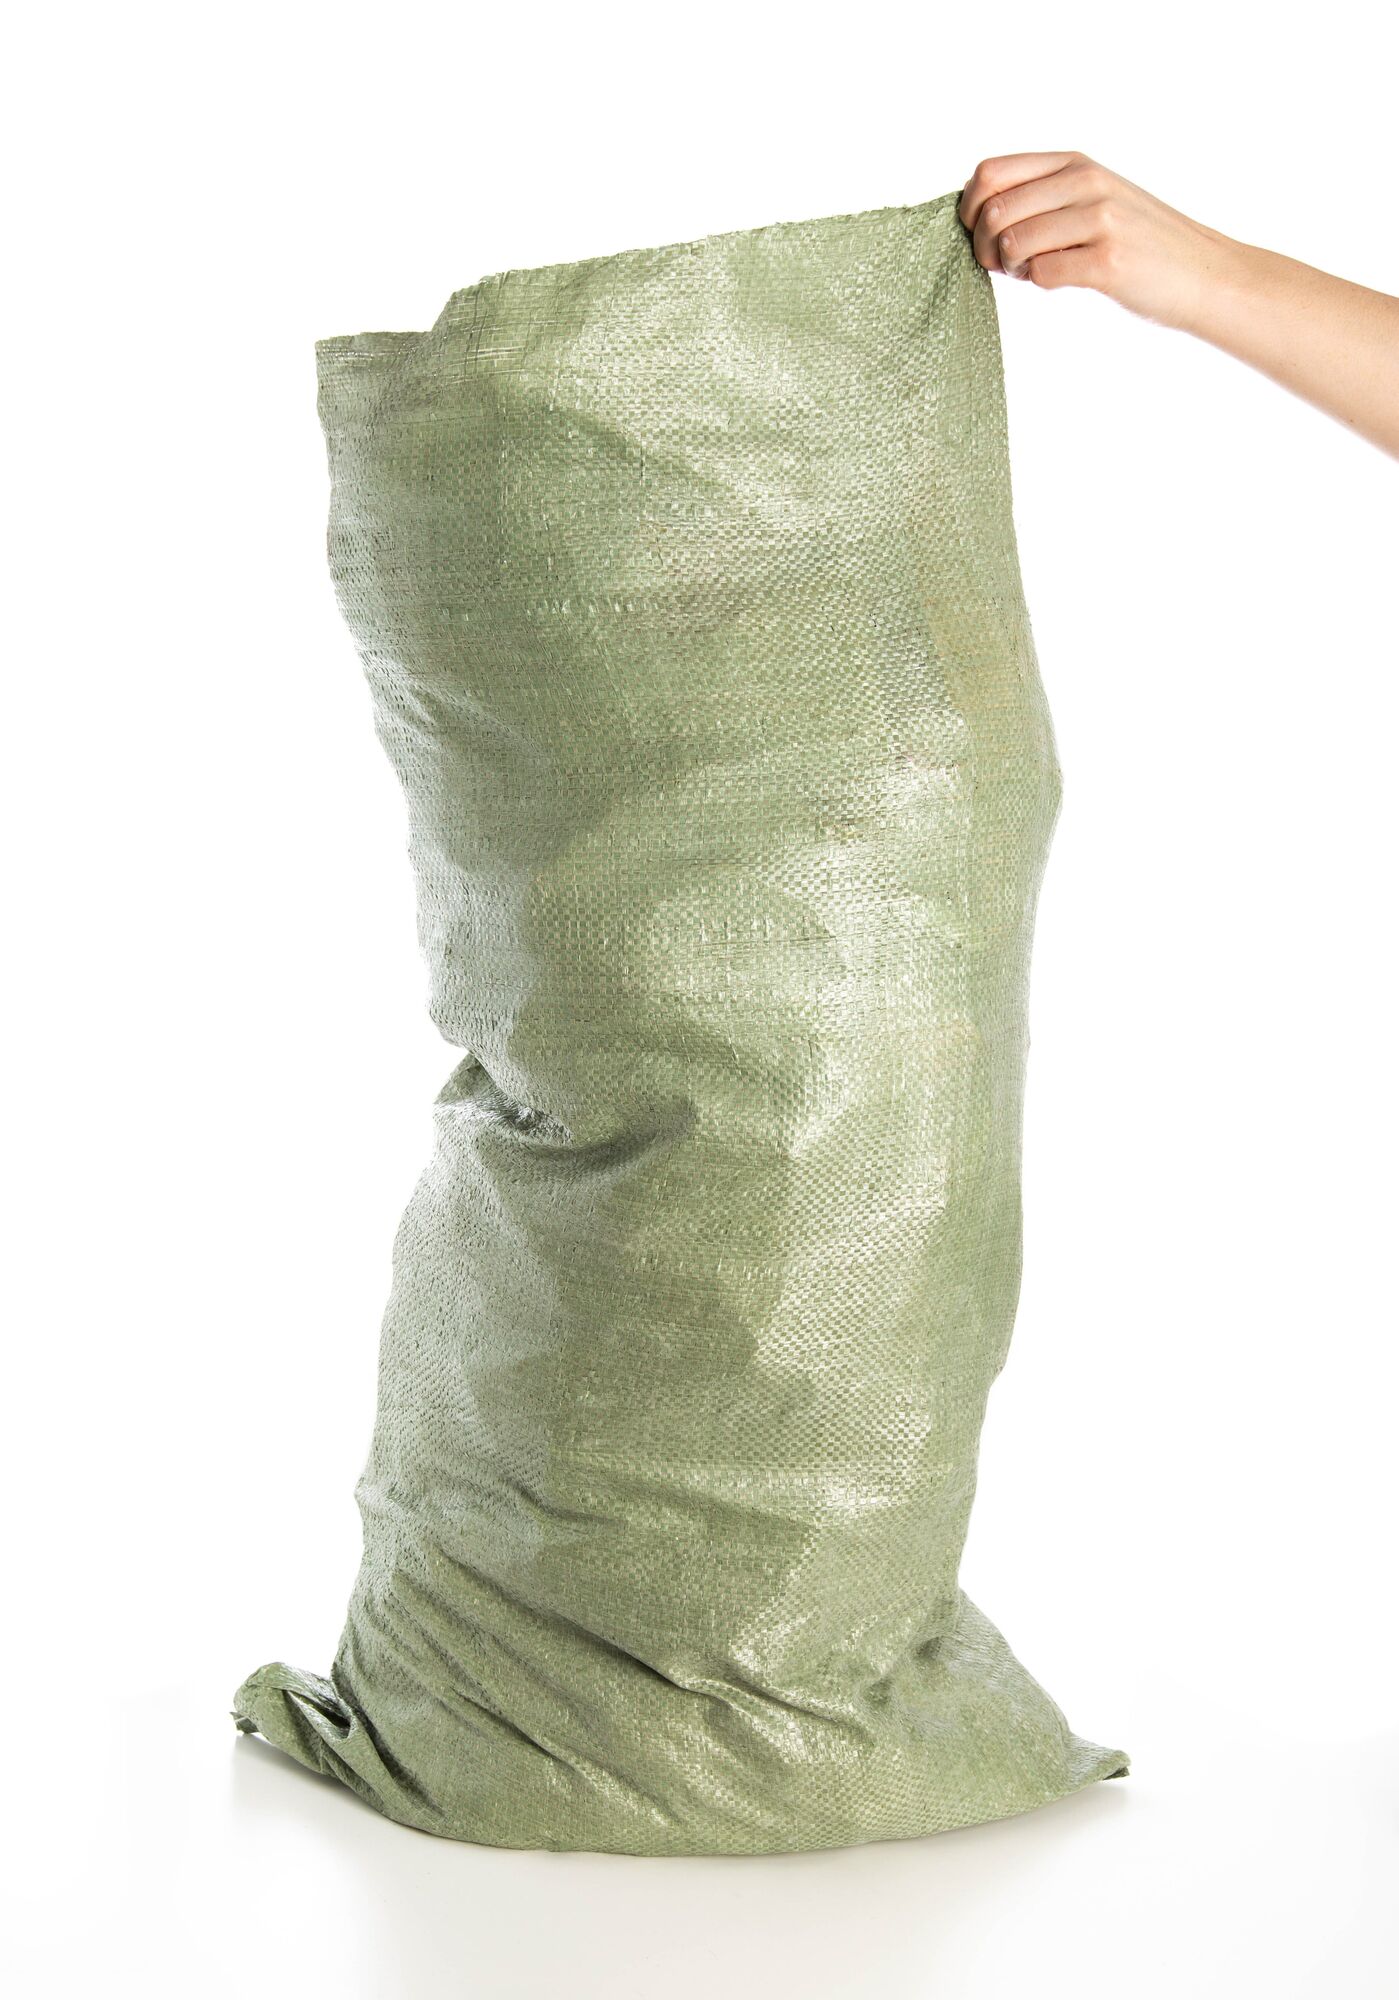 Мешок полипропиленовый зеленый 55х95, комплект 100 шт